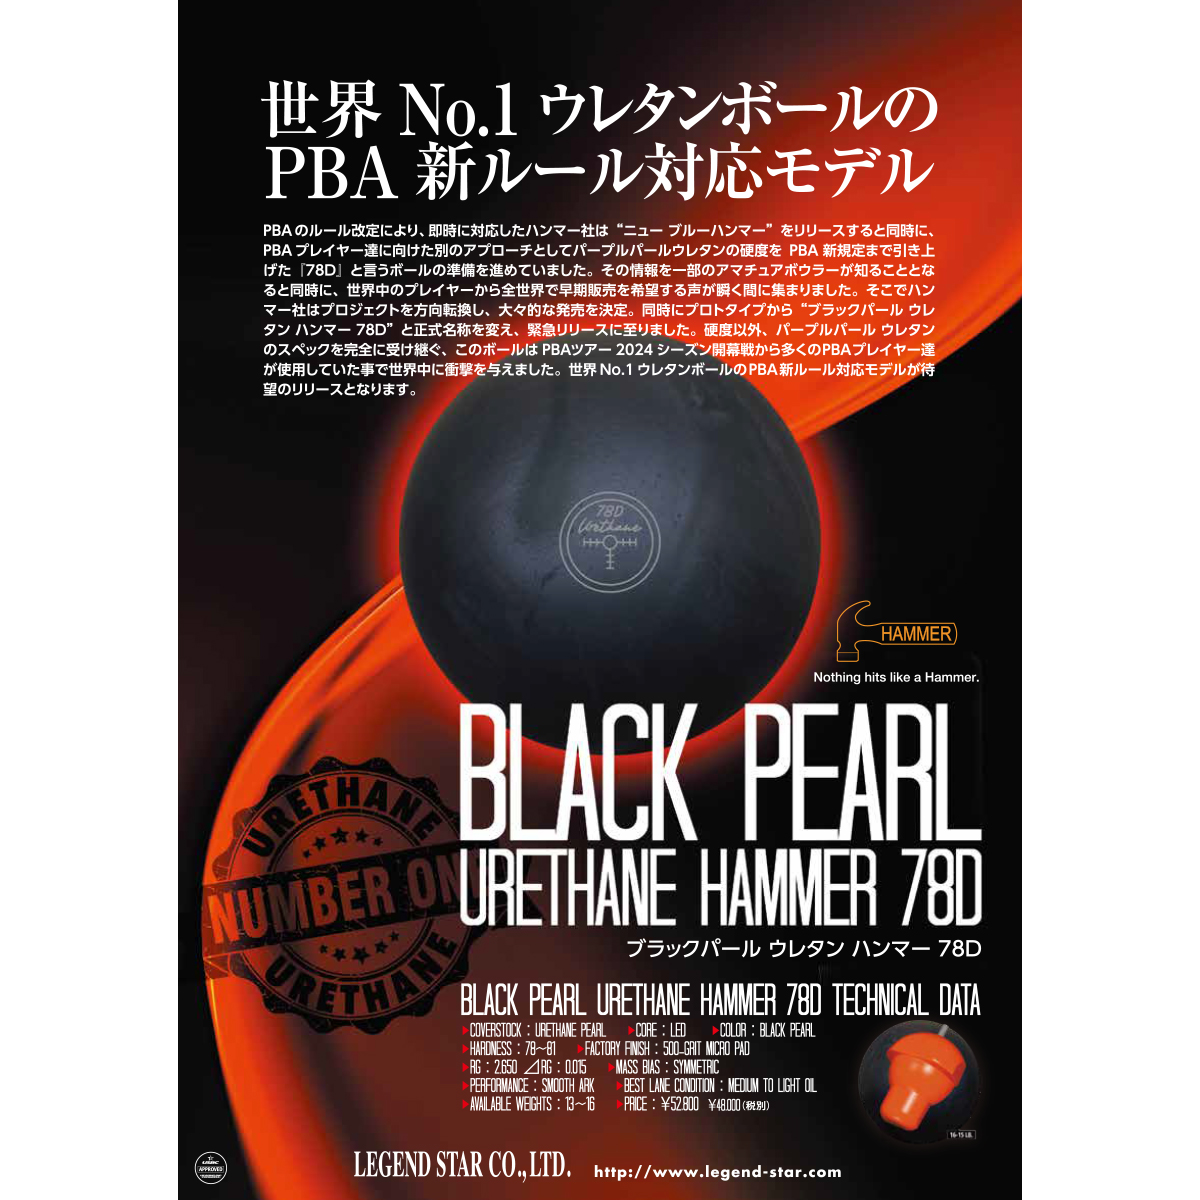 (ハンマー)ブラックパール ウレタン ハンマー 78D